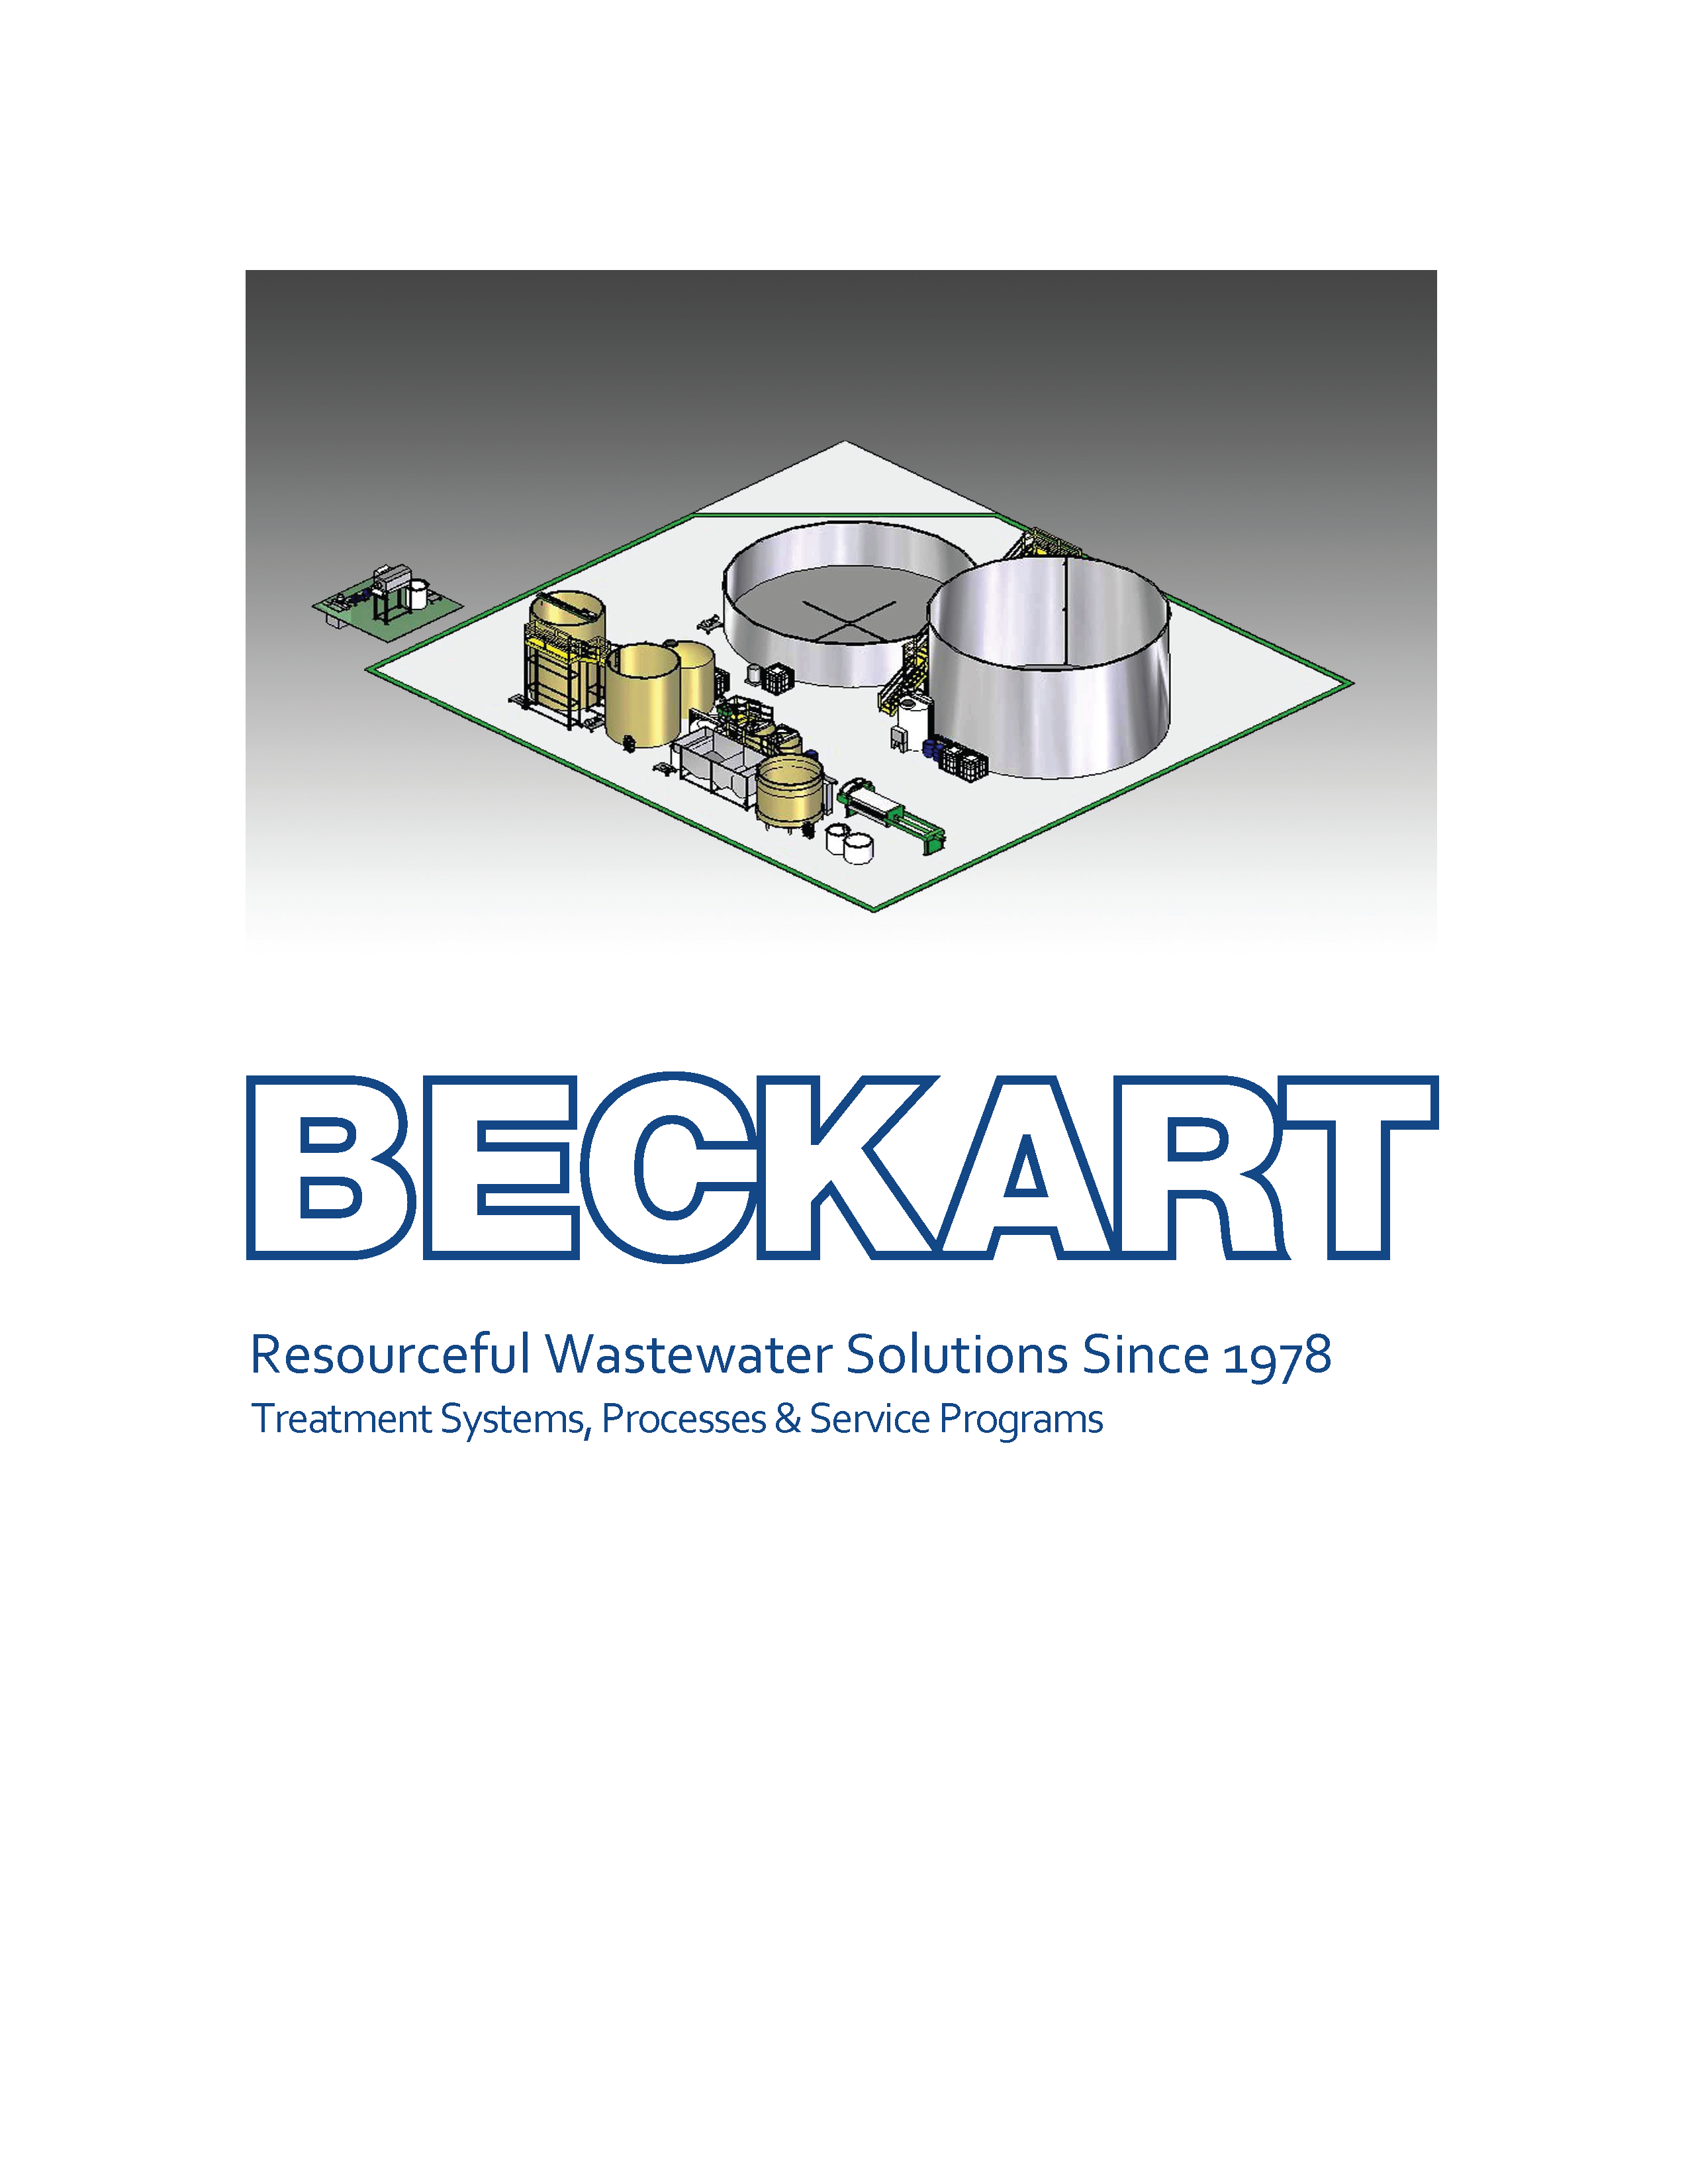 Conozca más de las soluciones que Beckart ofrece.